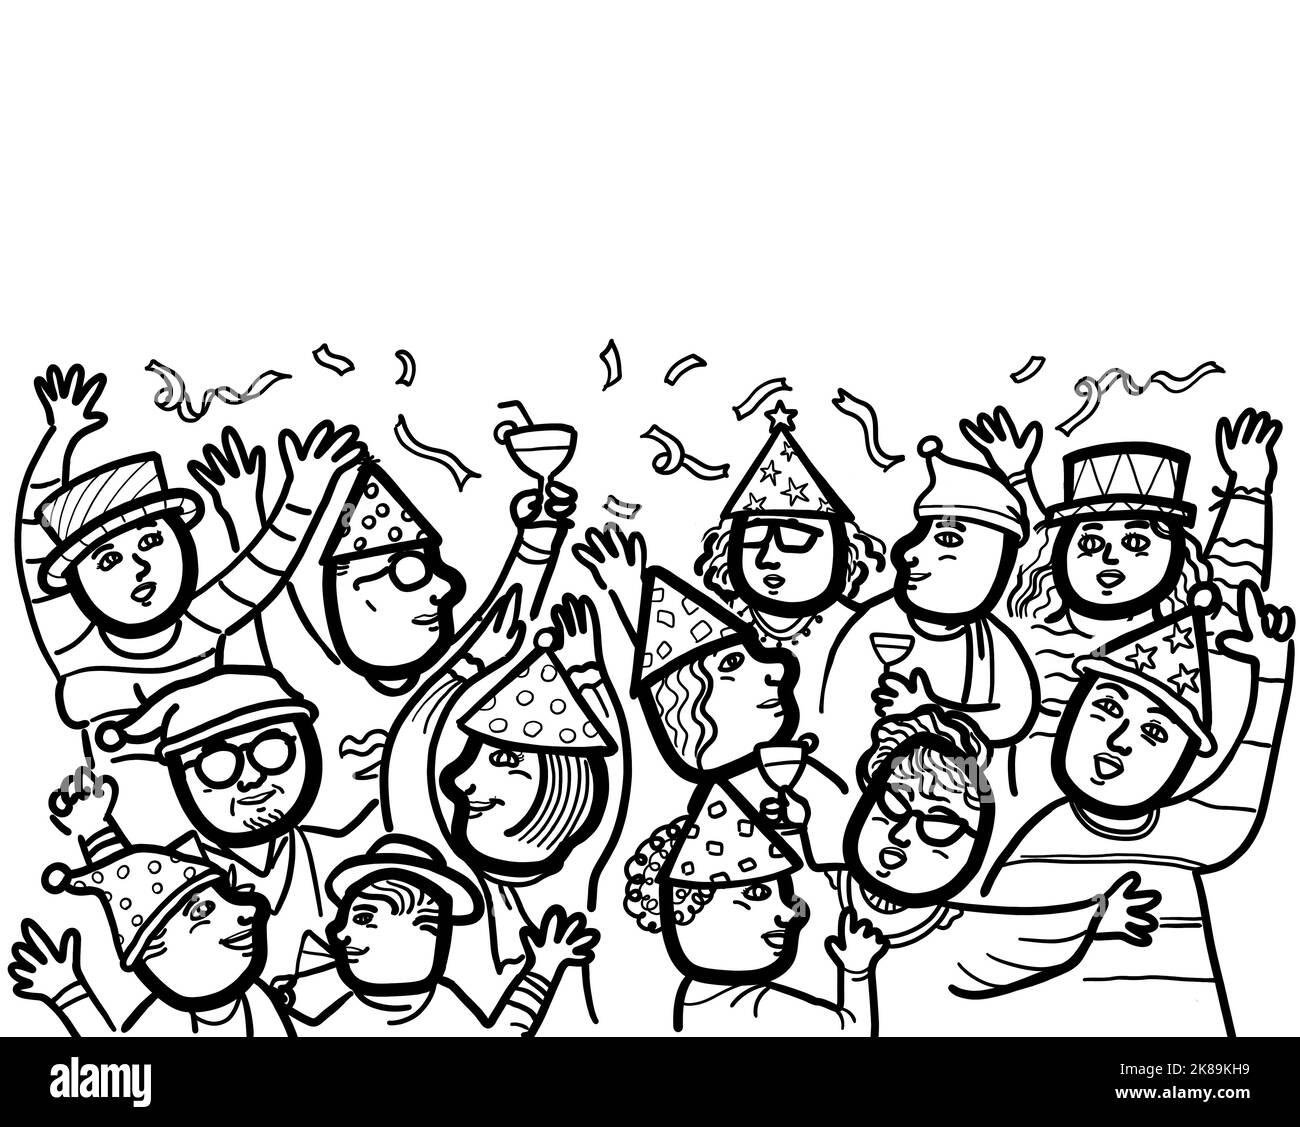 Illustration der multiethnischen und gemischten Altersgruppe von Menschen feiern Weihnachten und die Neujahrsfeier. Cartoon schwarz-weiße Zeichnung mit einer Kopie sp Stockfoto